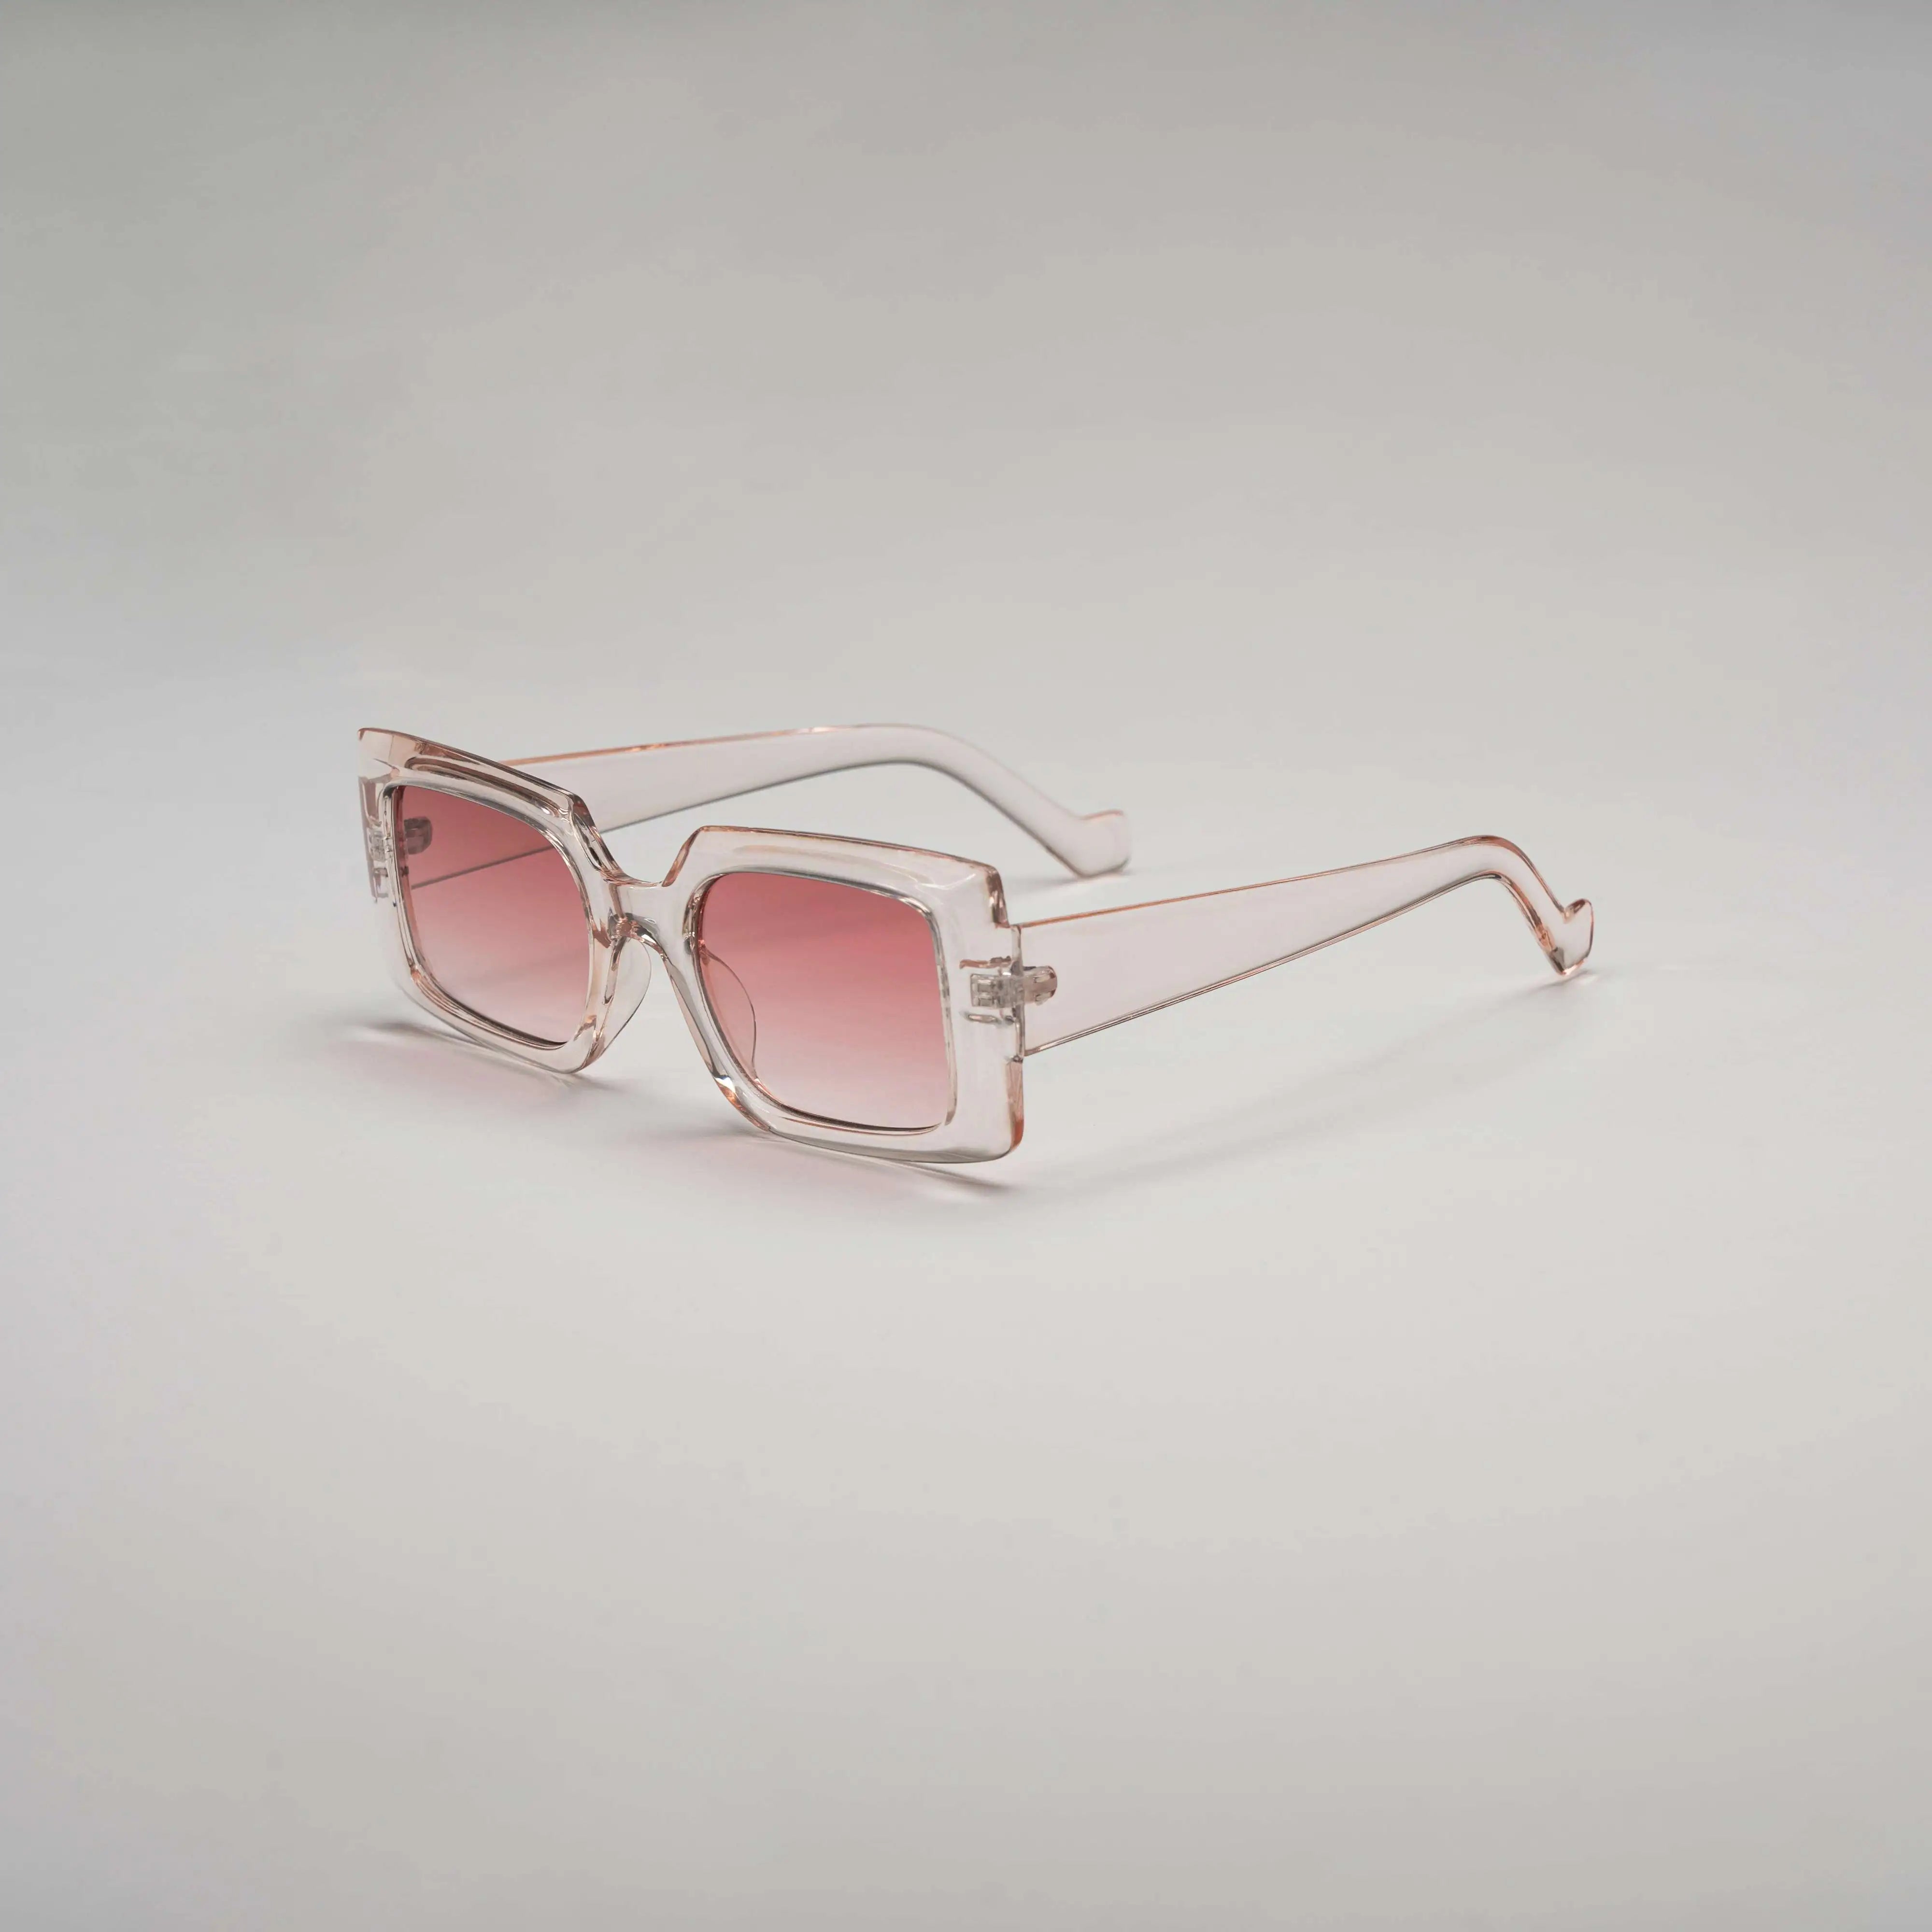 'Turbo Time' Retro Square Sunglasses in Pink